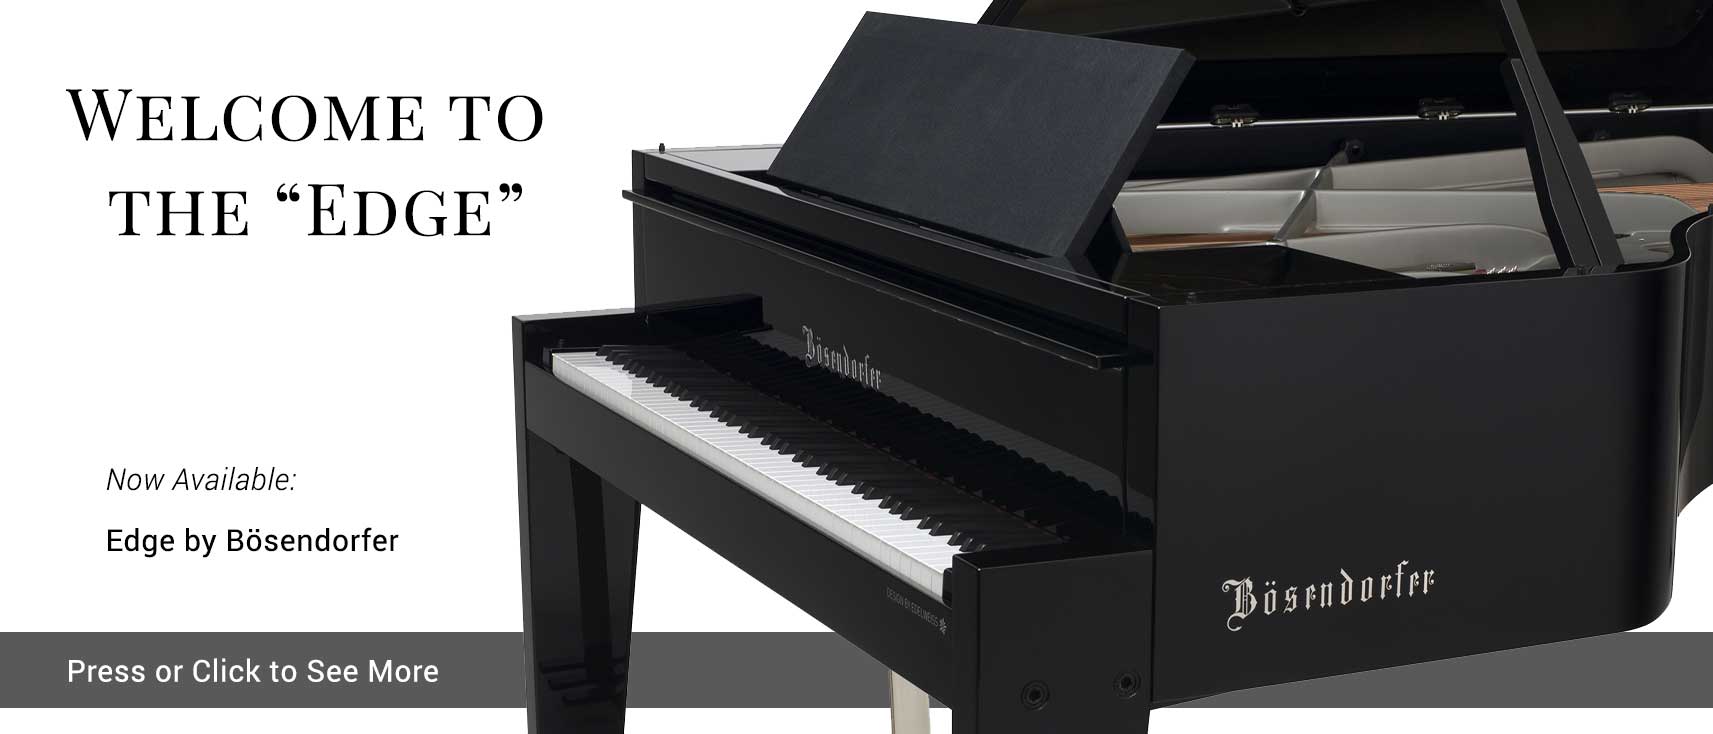 Bosendorfer Edge Ultimate Design Piano